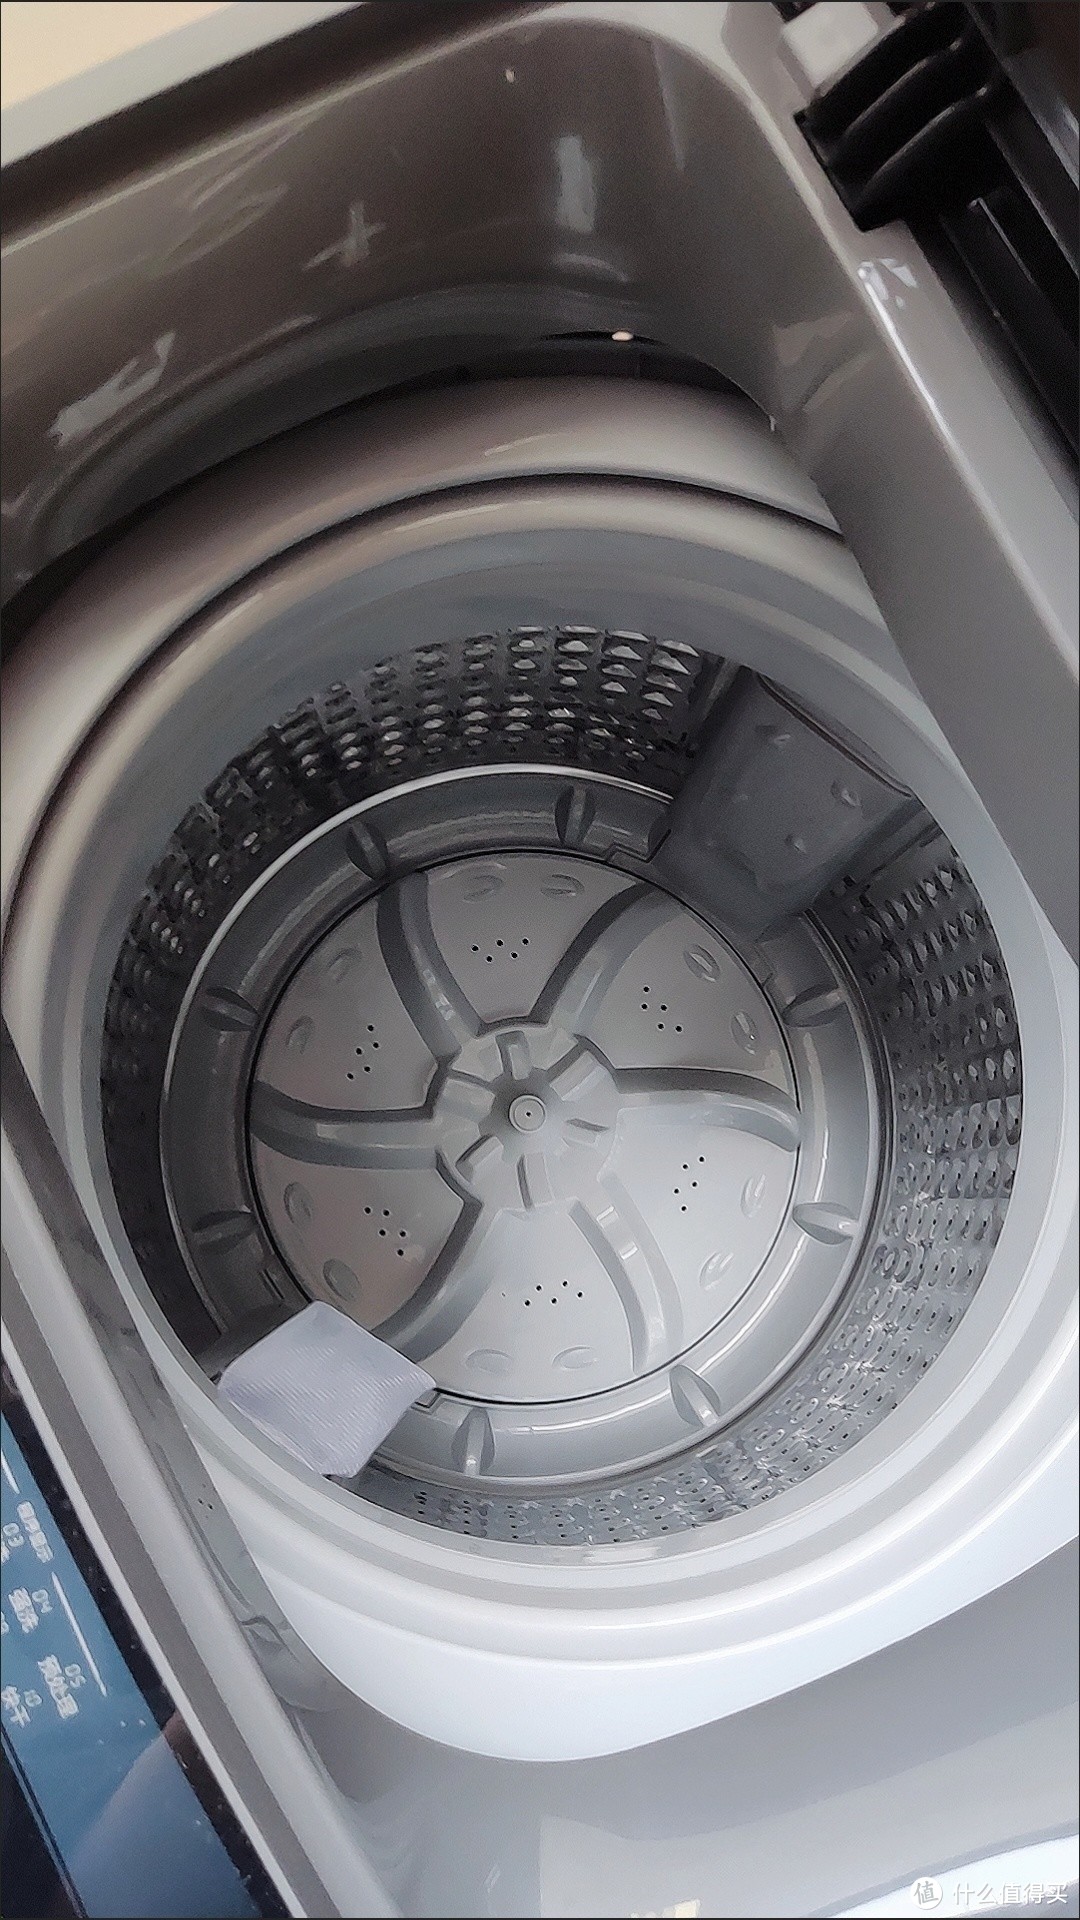 这个洗衣机很好用